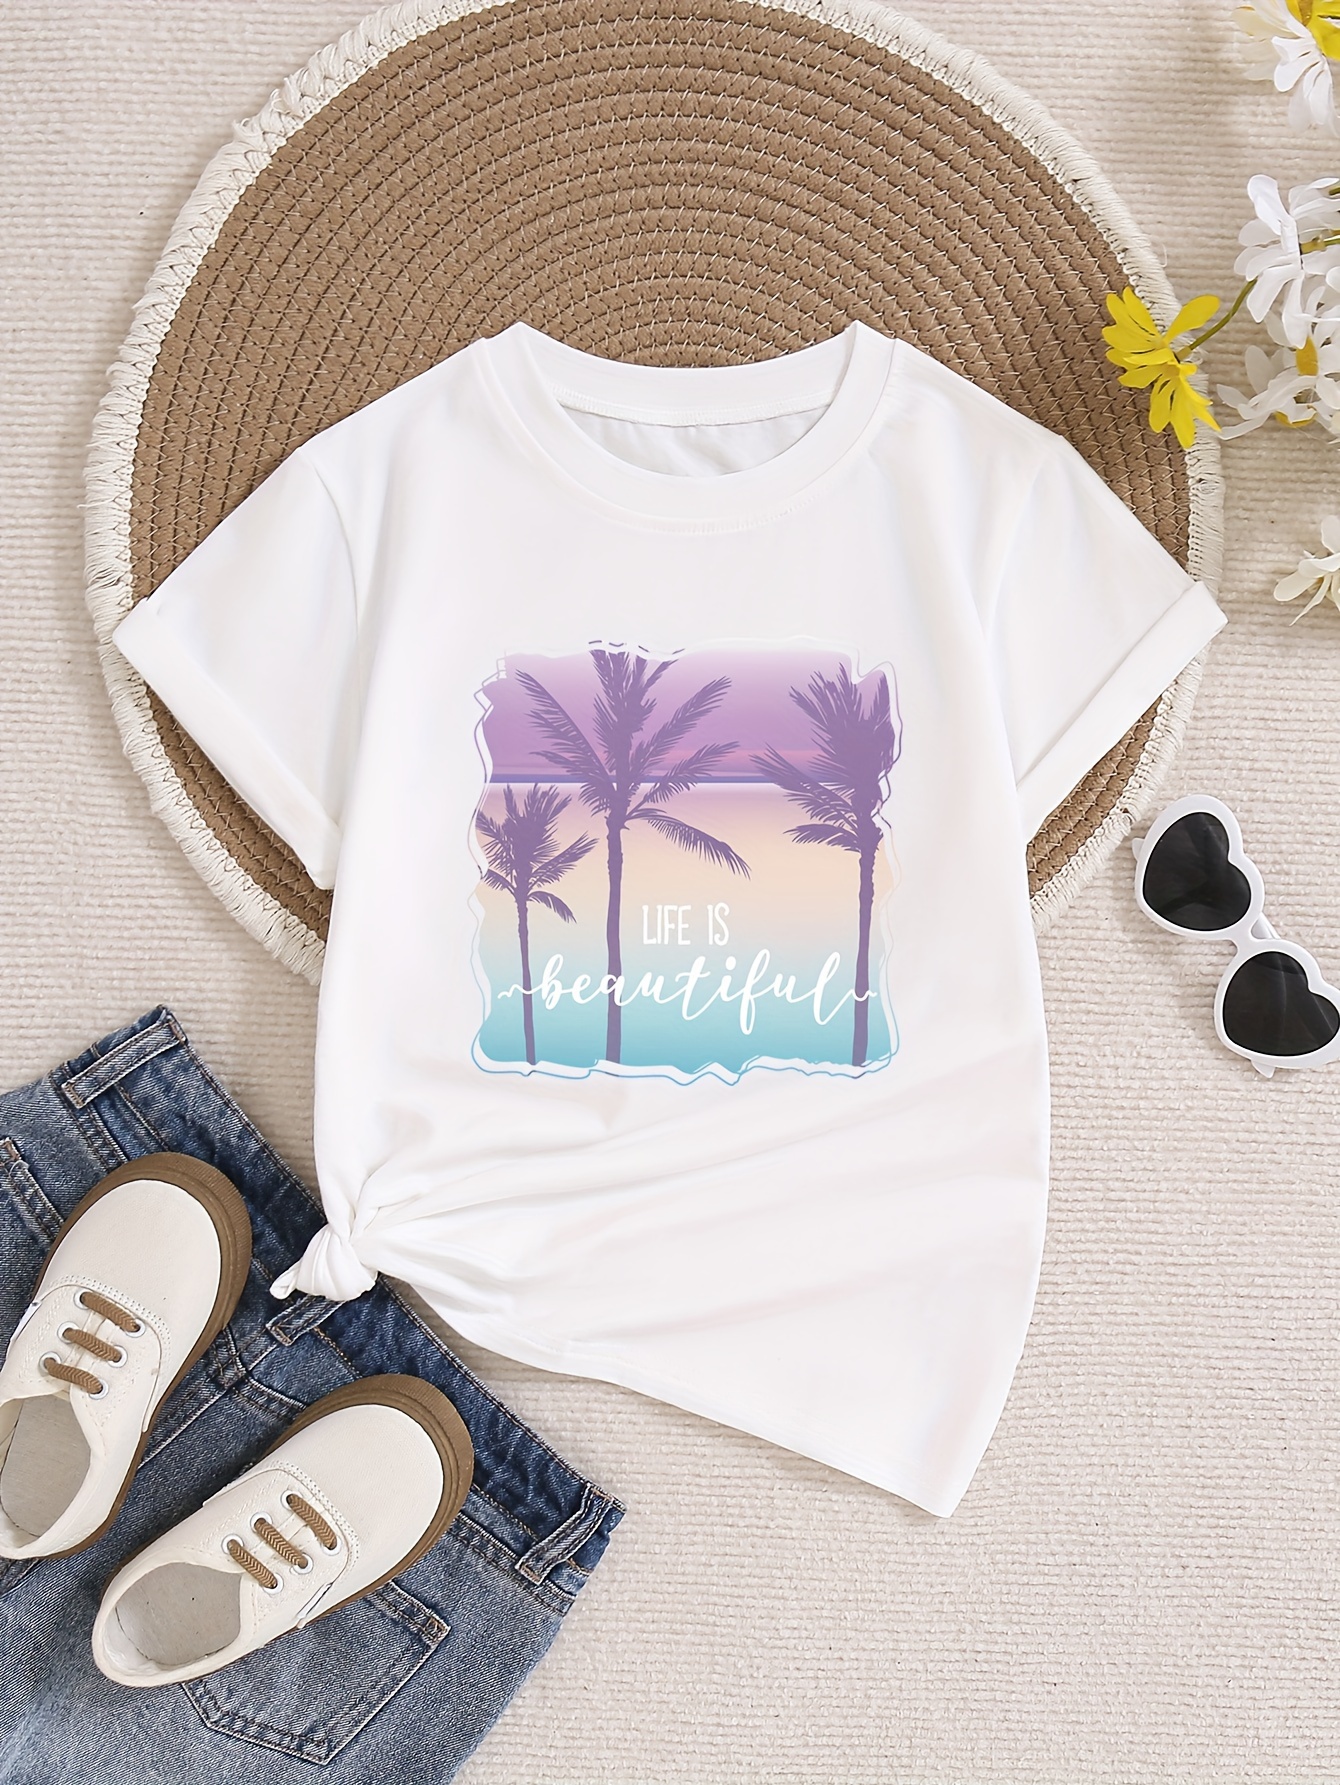 Beautiful Beach Print Tops, Comfy Versatile Crew Neck Short Sleeve T-shirt For Girls Summer Outdoor Gift